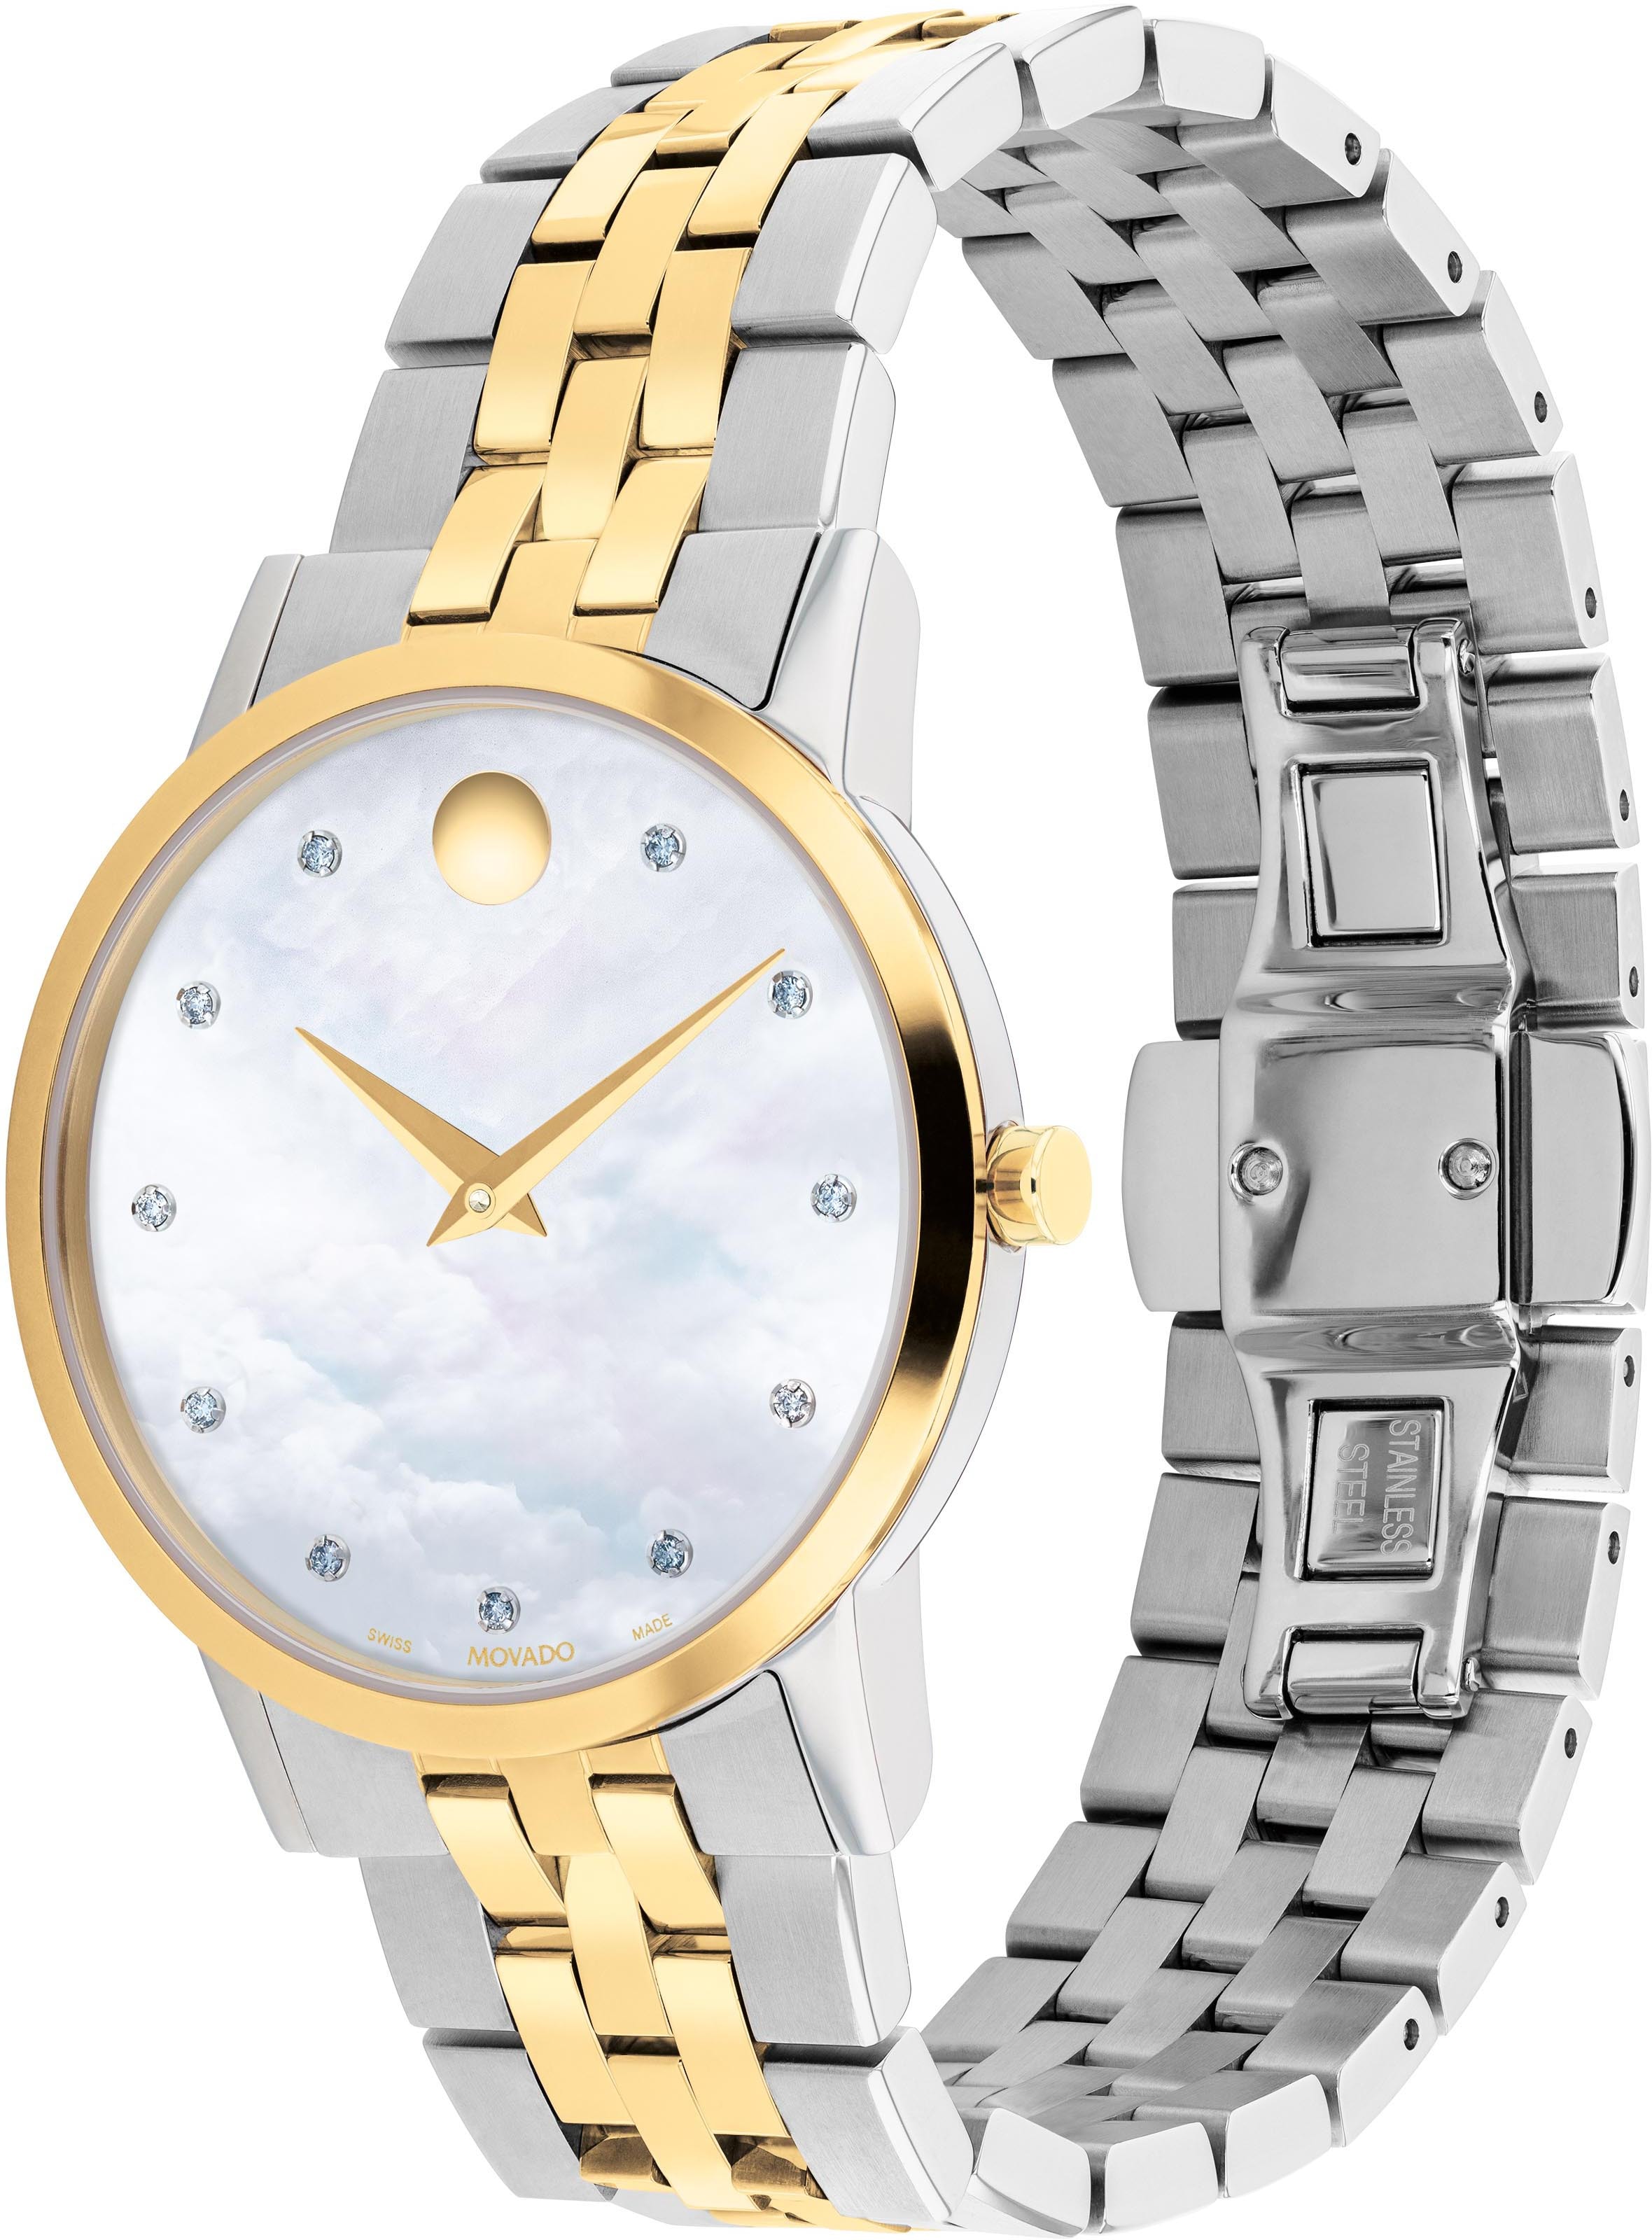 MOVADO Schweizer Uhr »MUSEUM, 0607630«, Quarzuhr, Armbanduhr, Damenuhr, Swiss Made, Diamant-Steine, Perlmutt